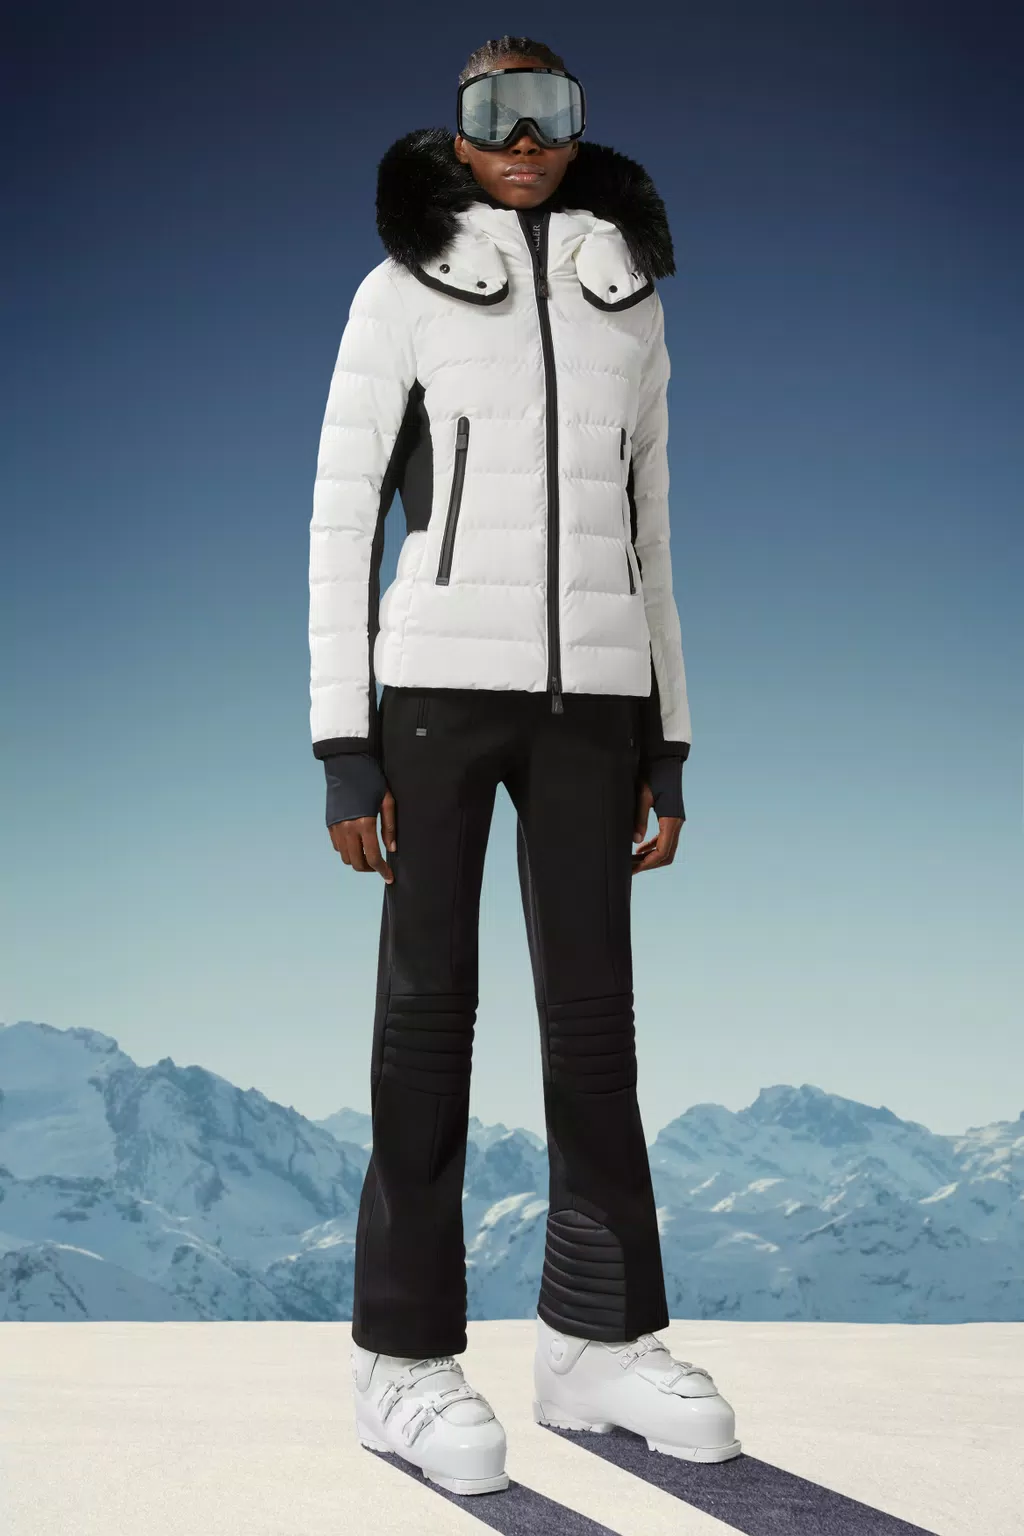 Ski Jackets for Women - Grenoble